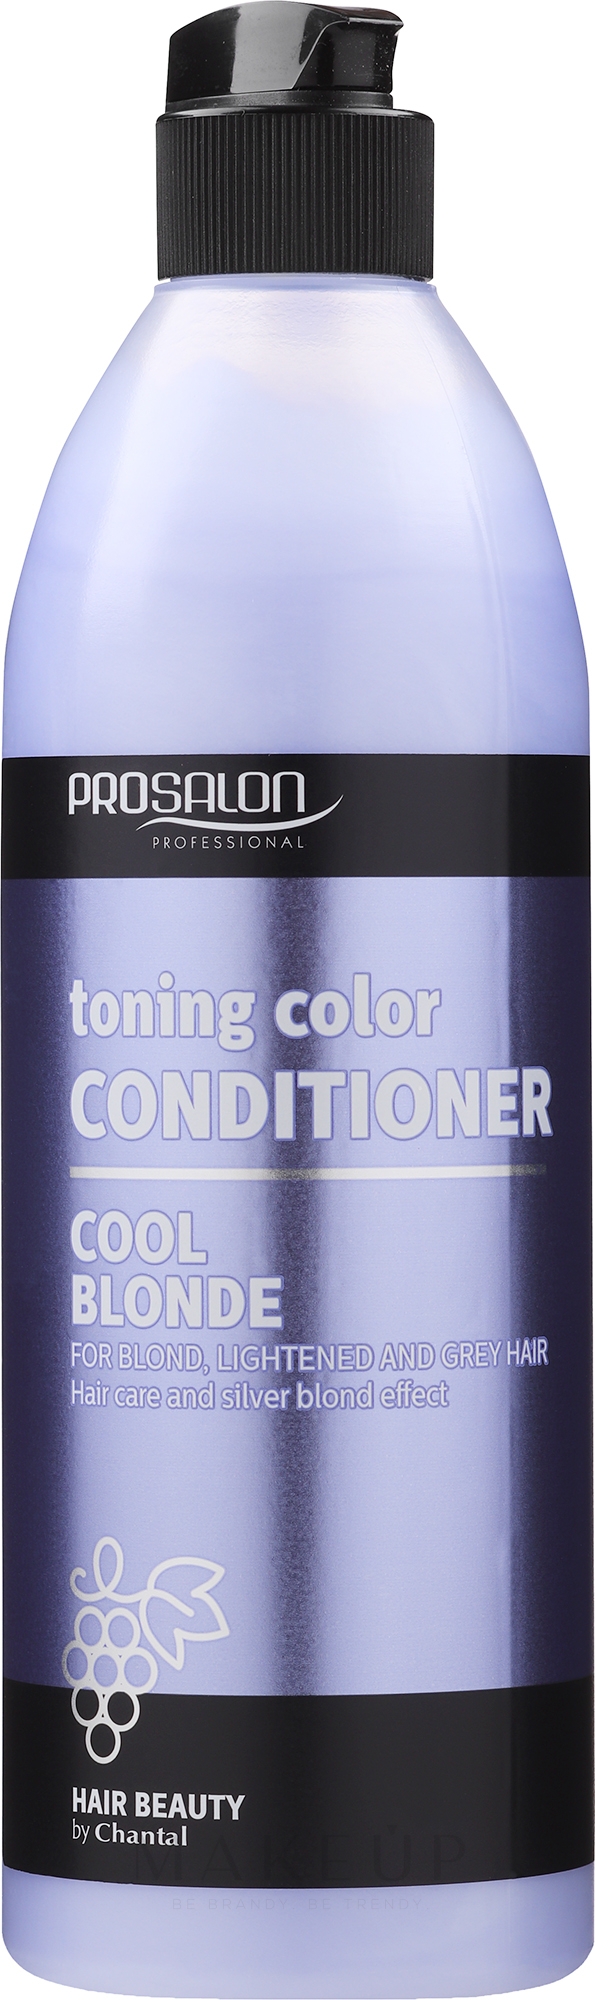 Regenerierender Conditioner für blondes und graues Haar - Prosalon Hair Care Conditioner — Foto 500 g